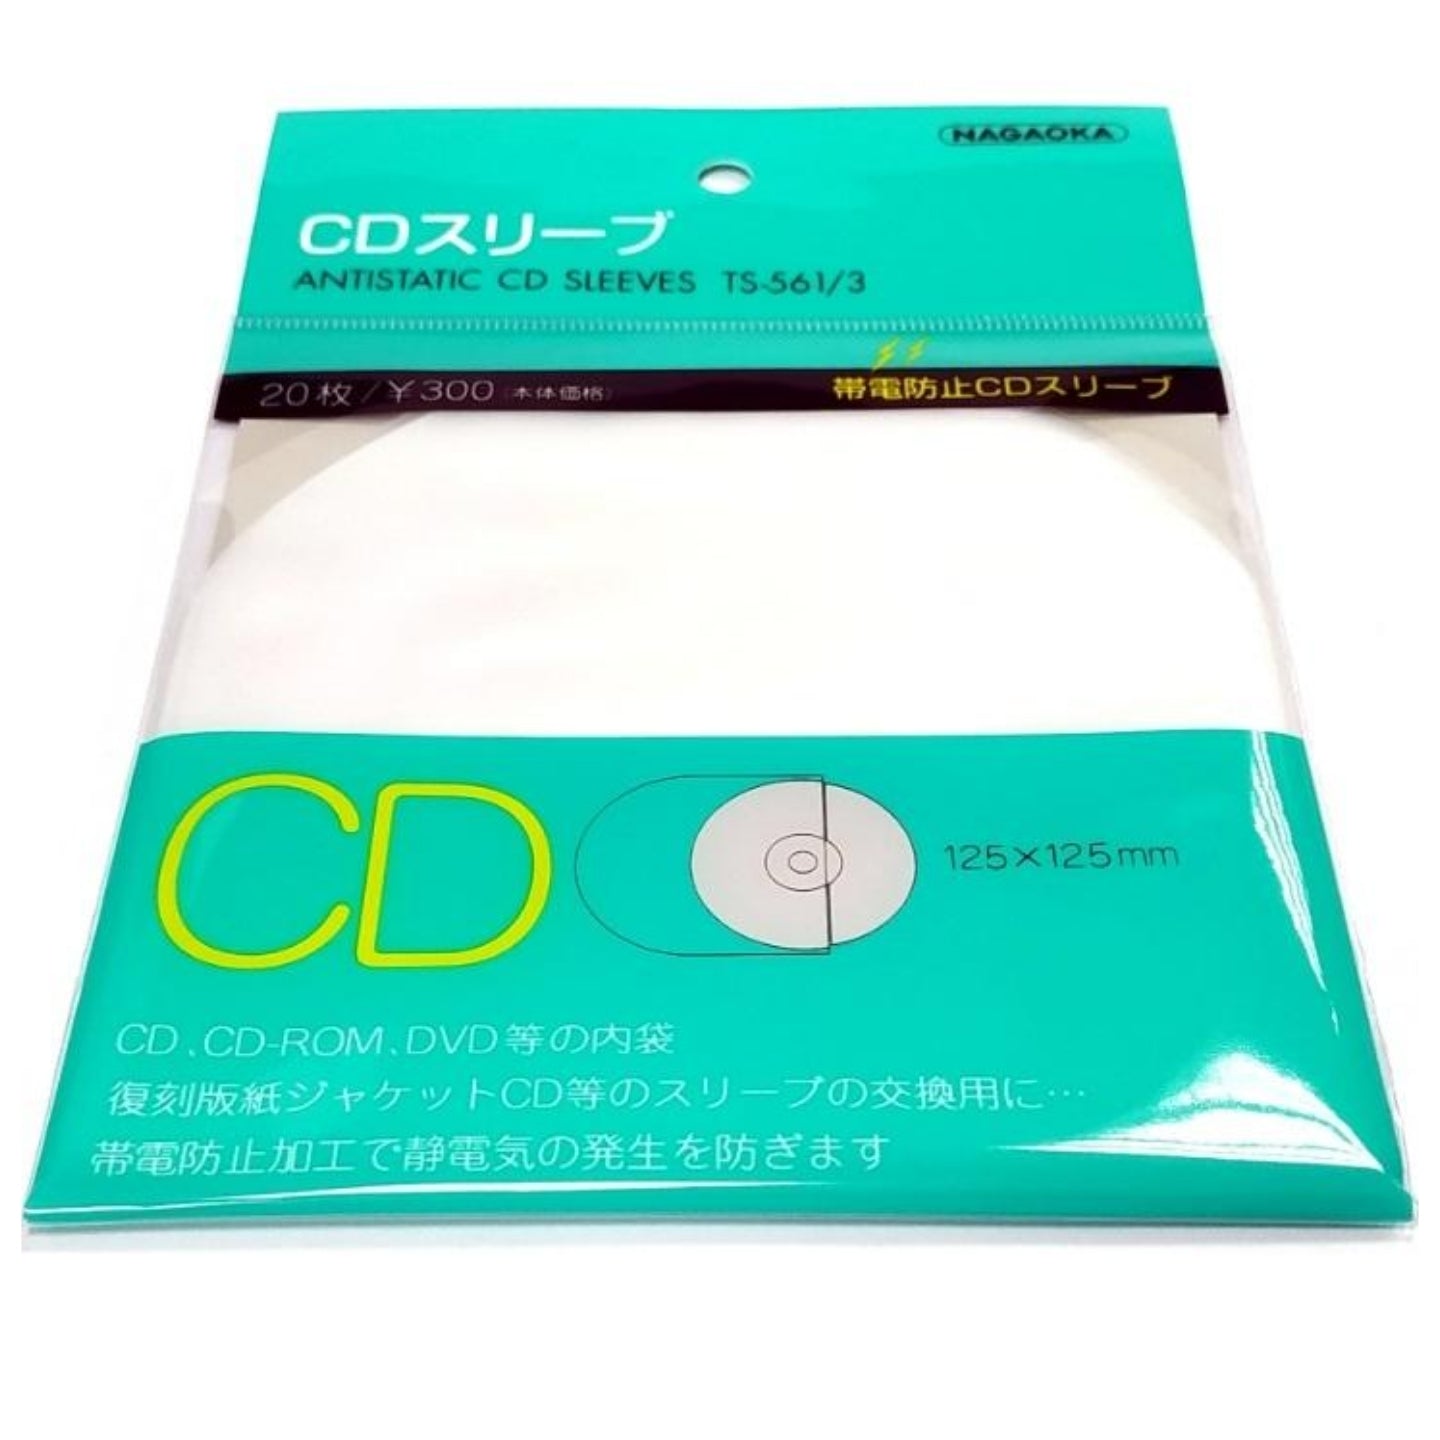 Nagaoka Cd Inner Sleeves Ts 561 3 Japanese Antistatic Inner Cd Sle Rubber Duckee